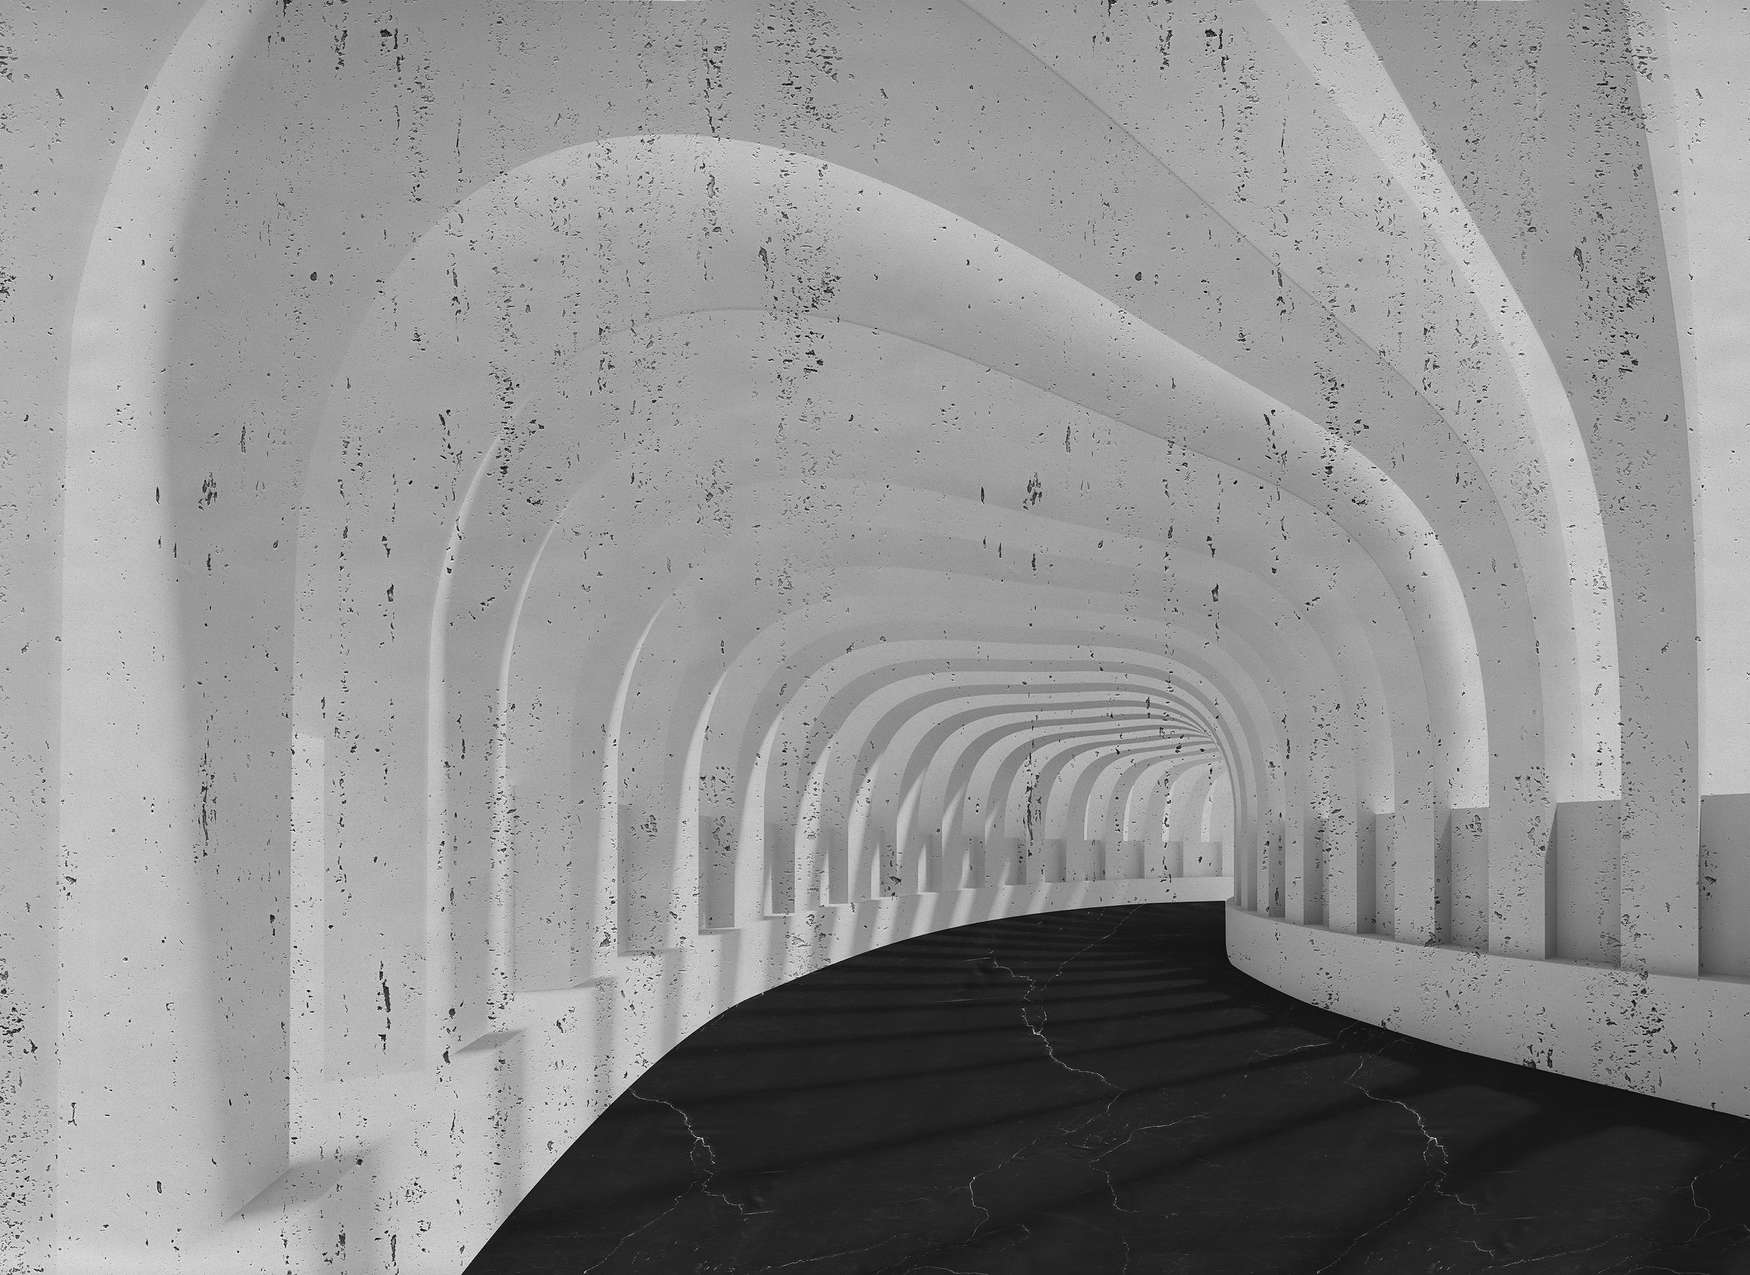             Fototapete 3D Tunnel aus Beton mit Bögen – Grau, Schwarz
        